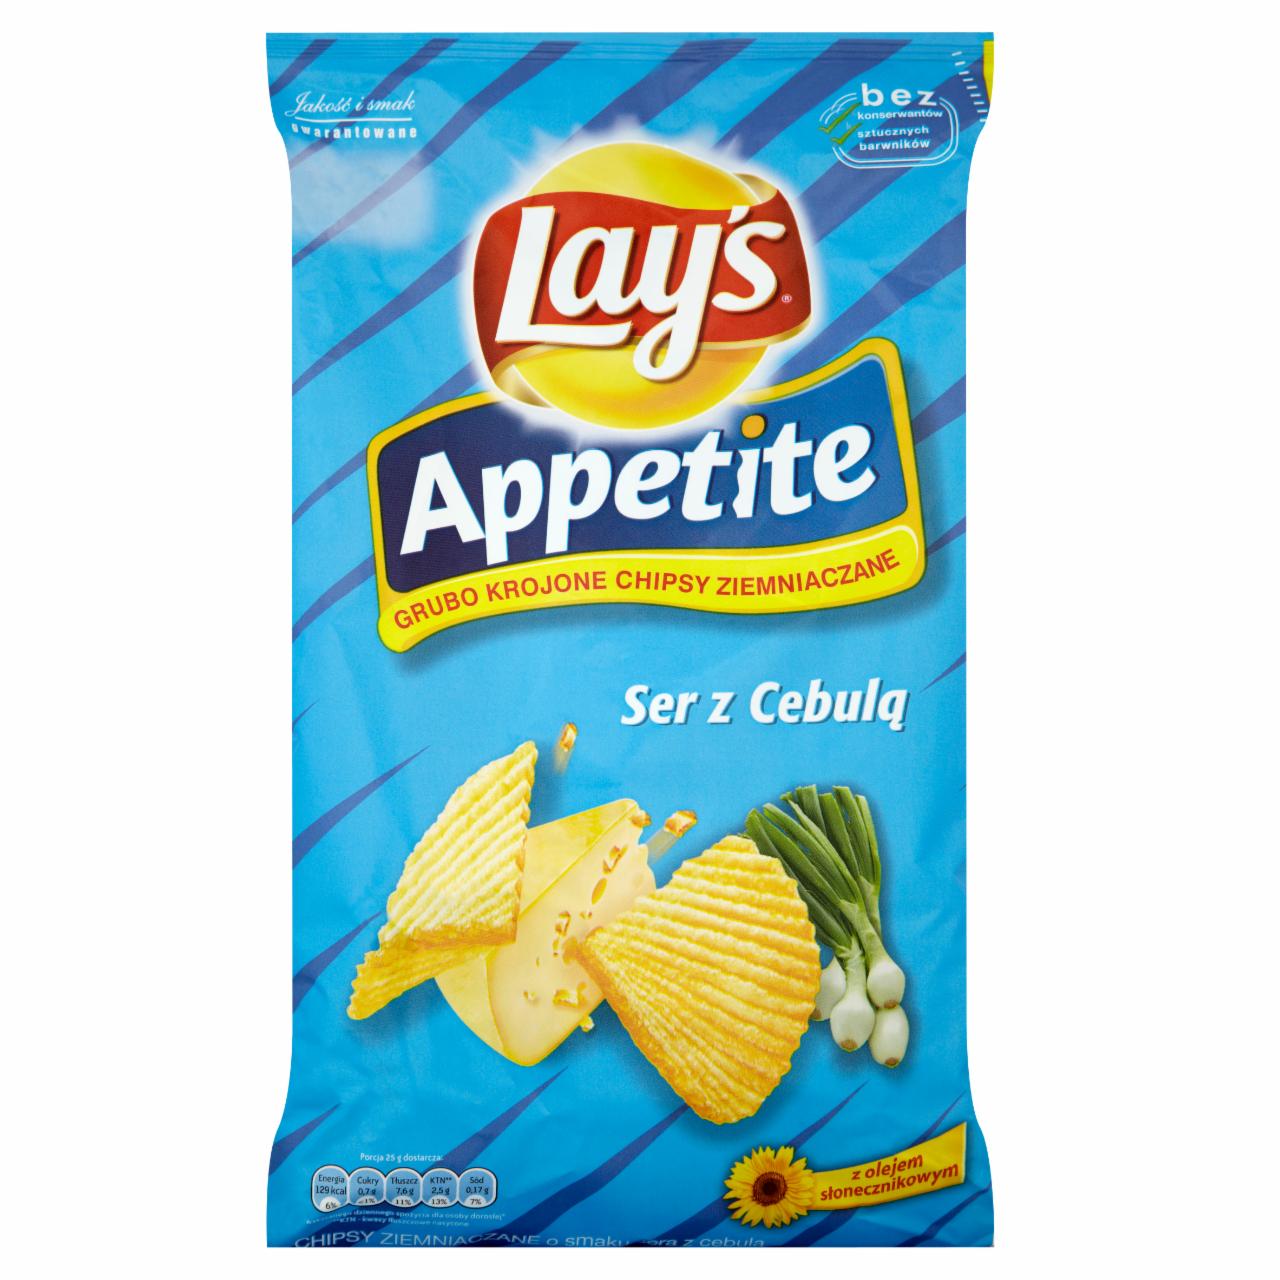 Zdjęcia - Lay's Appetite Ser z Cebulą Grubo krojone chipsy ziemniaczane 150 g